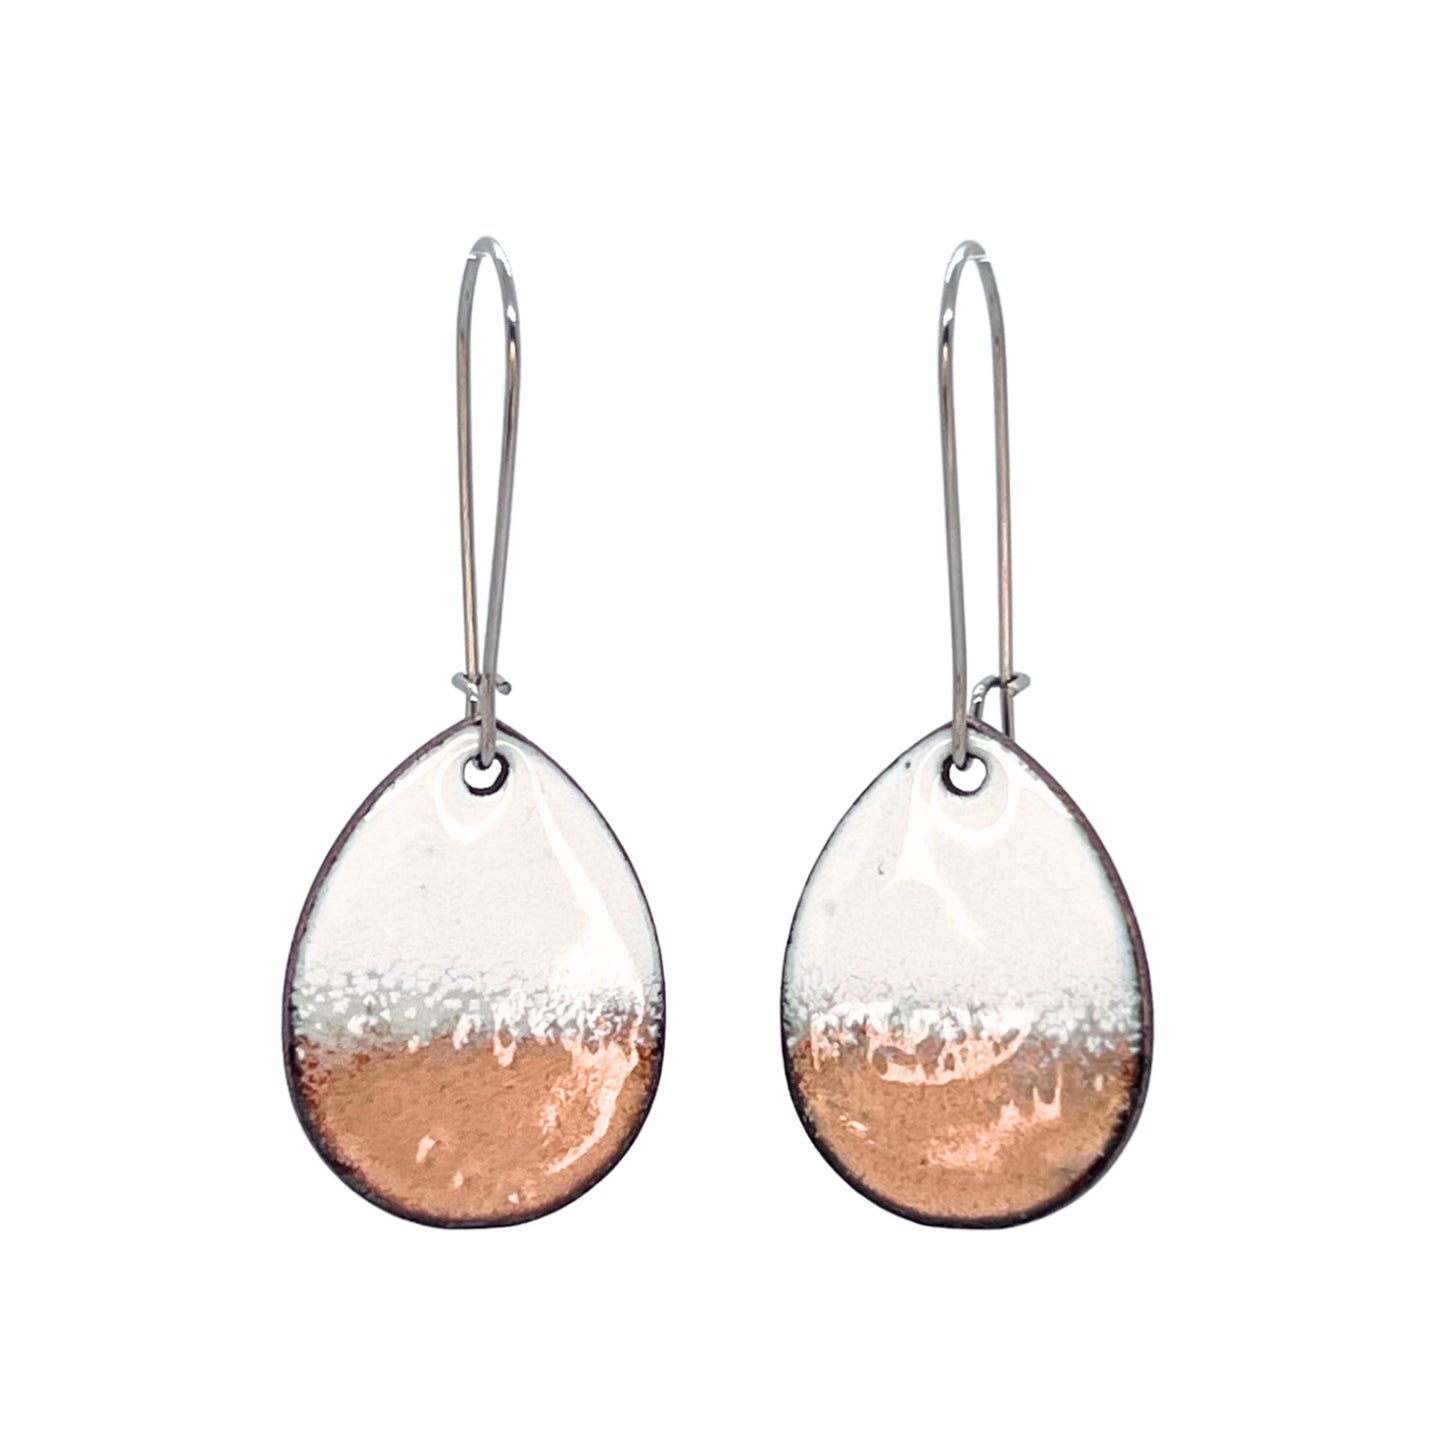 Horizon Teardrop Earrings in White & Copper